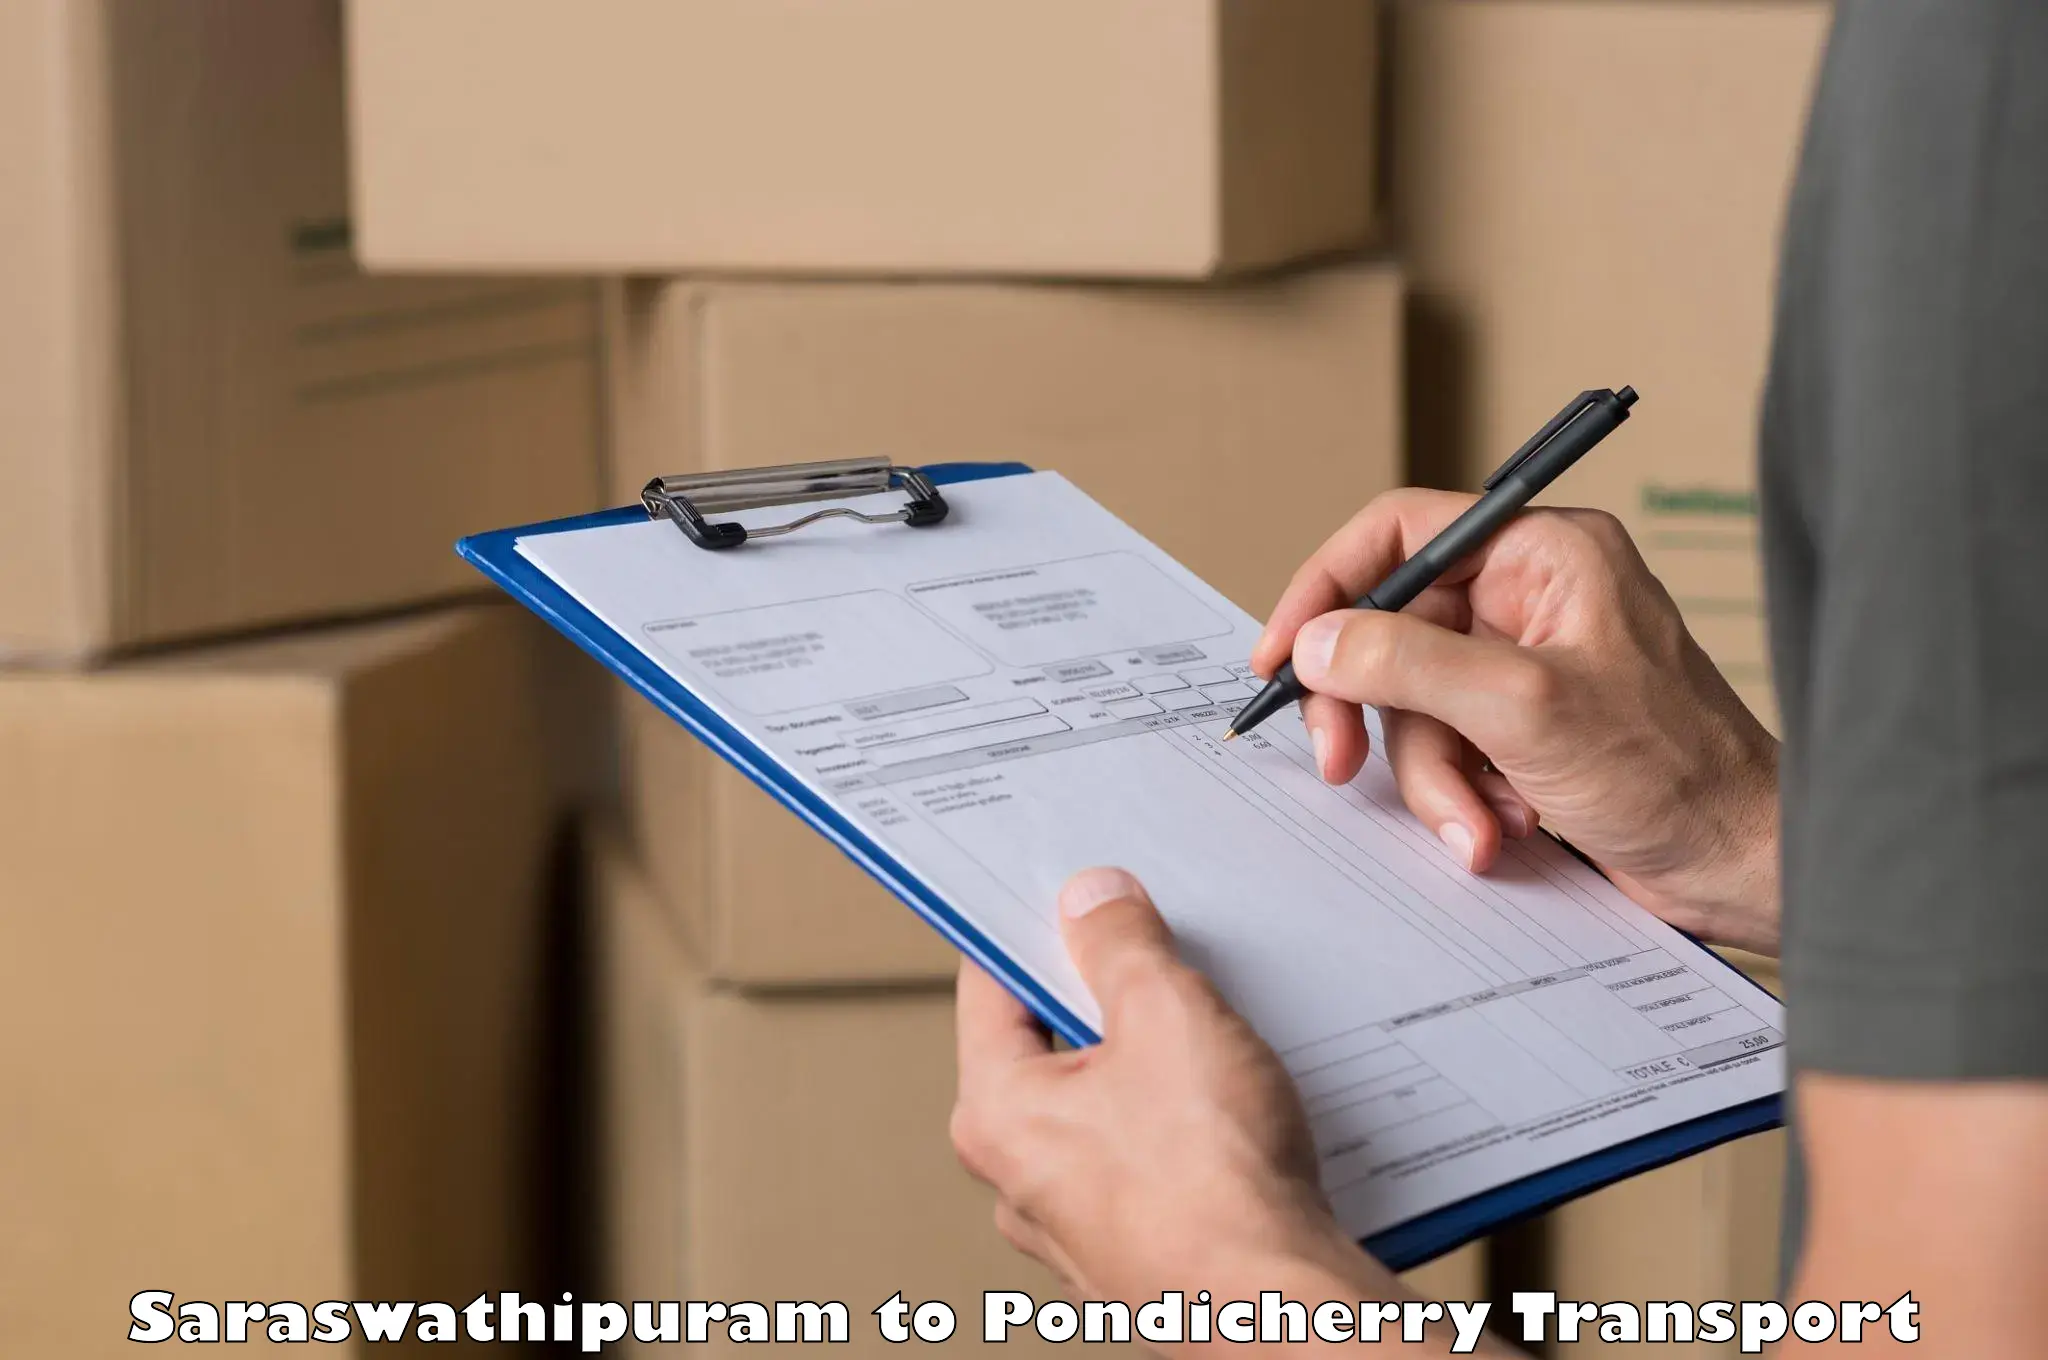 Daily transport service Saraswathipuram to Pondicherry